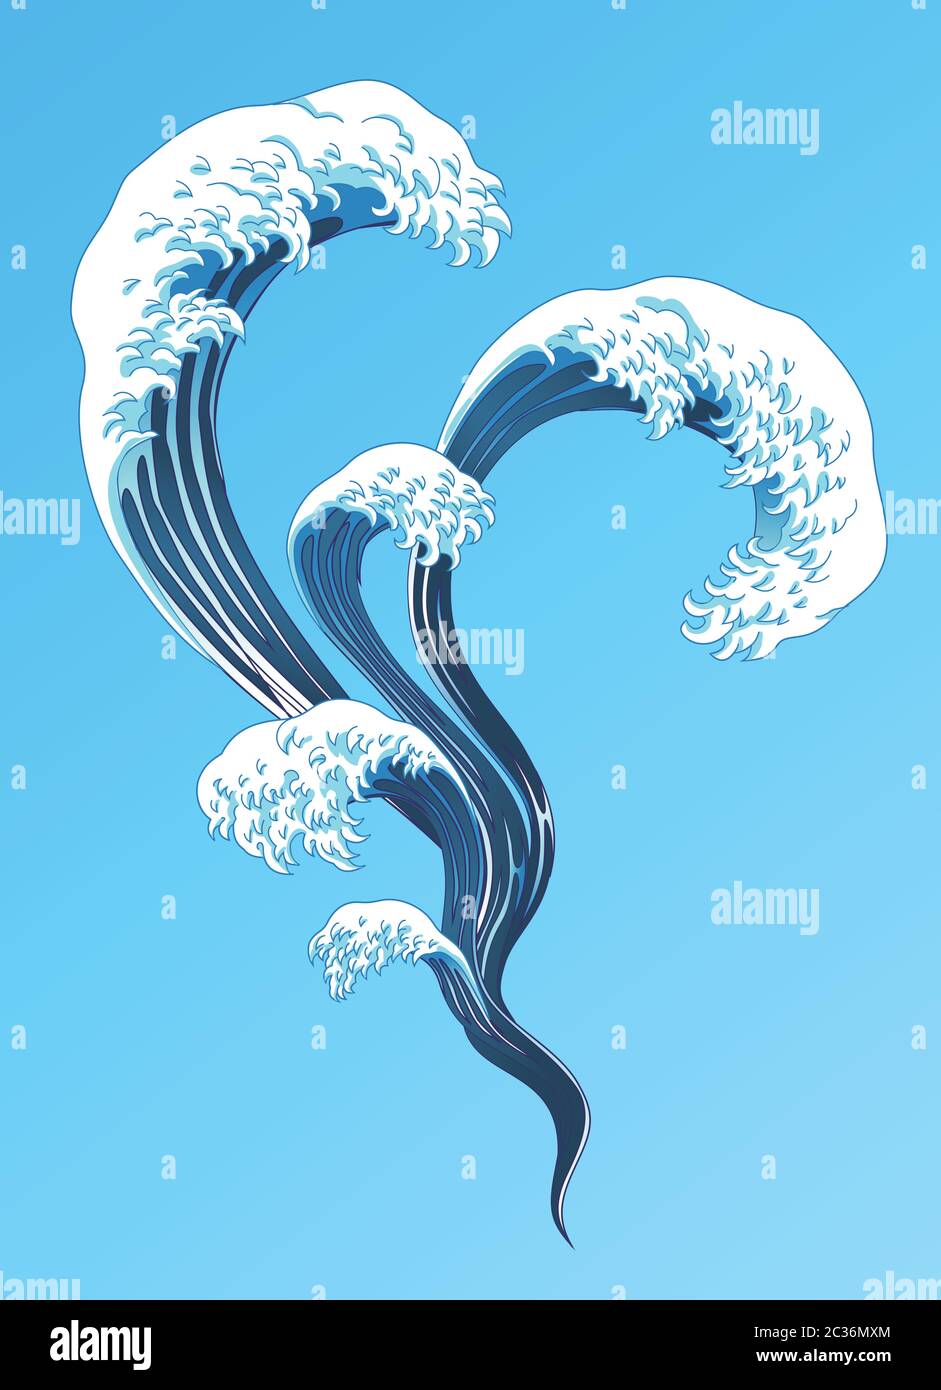 Des éléments d'ondes éclaboussant de style Ukiyo-e sur fond bleu Illustration de Vecteur